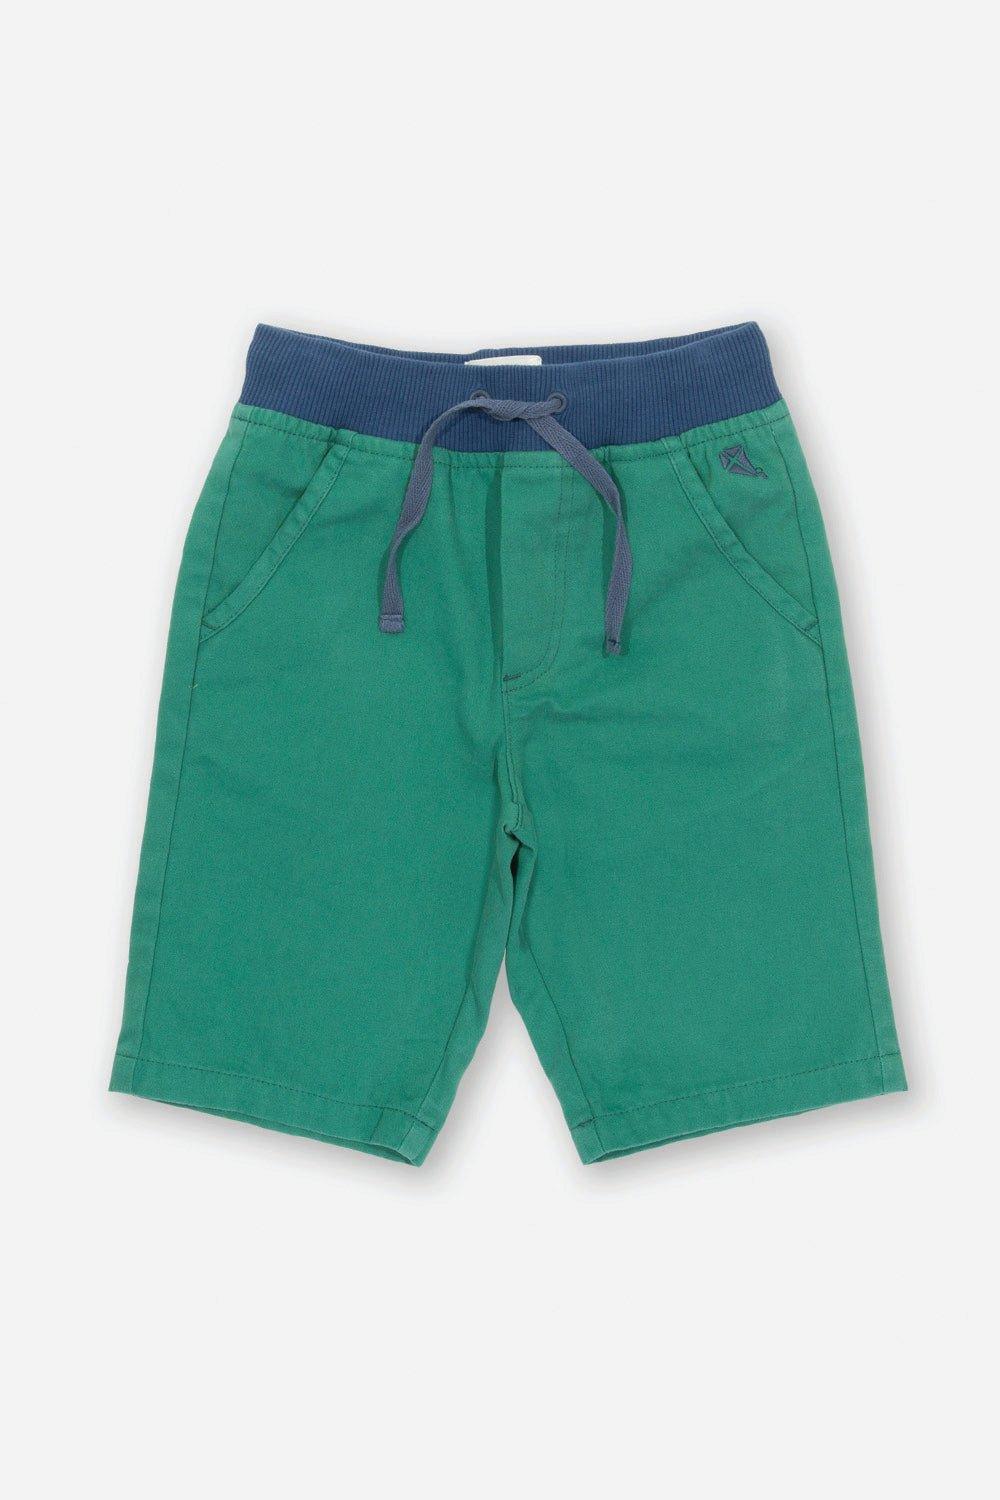 Yacht Shorts Green